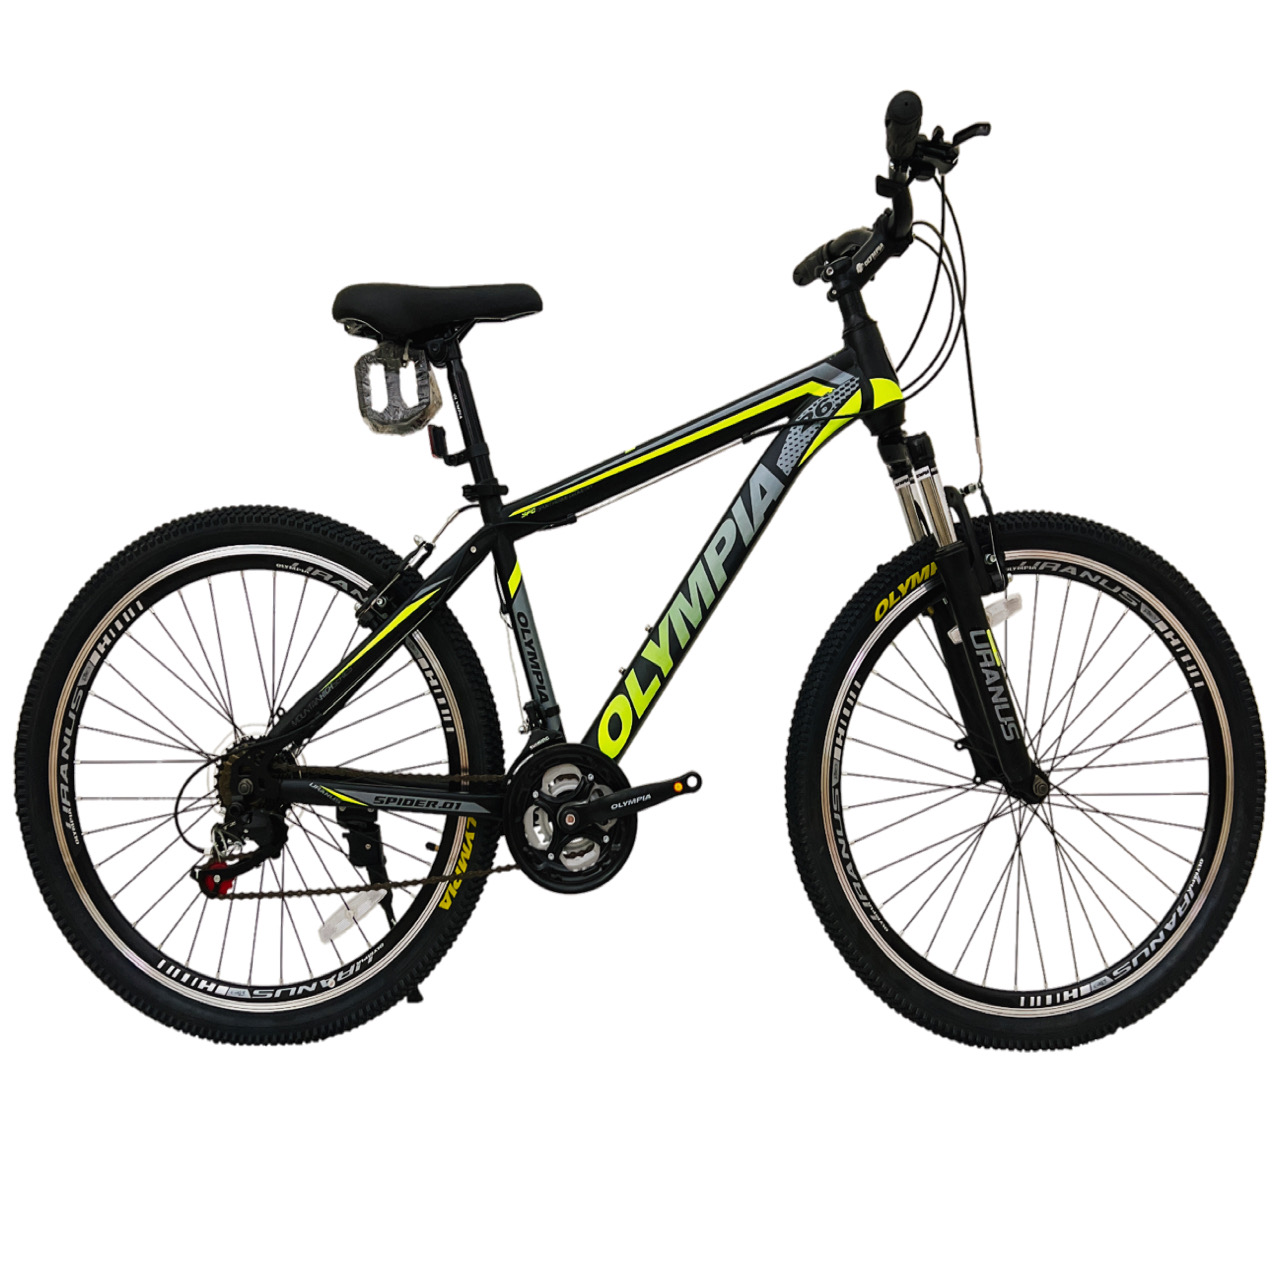 نکته خرید - قیمت روز دوچرخه کوهستان المپیا مدل SPIDER.01 کد 1 سایز 26 خرید